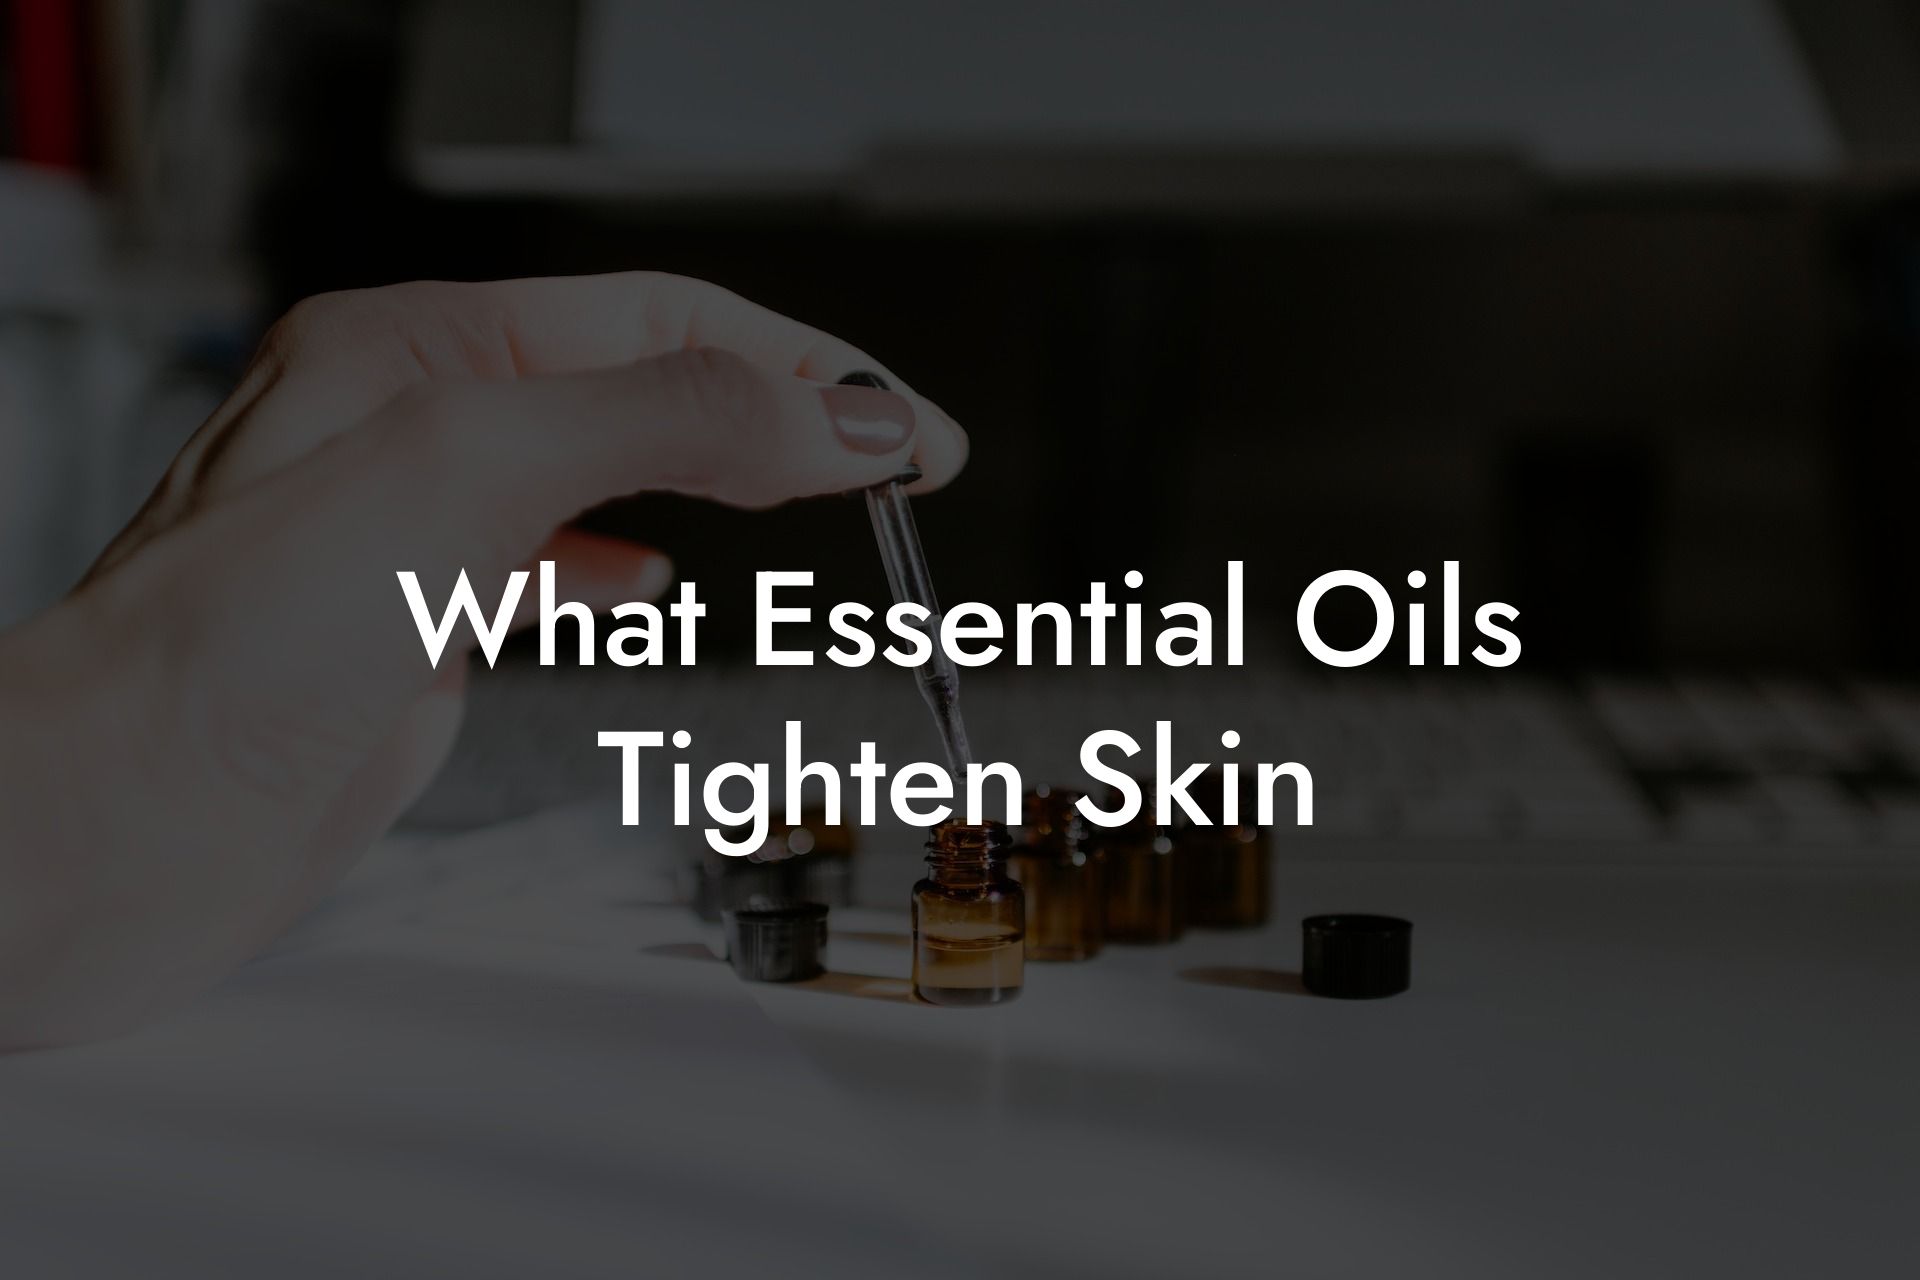 What Essential Oils Tighten Skin